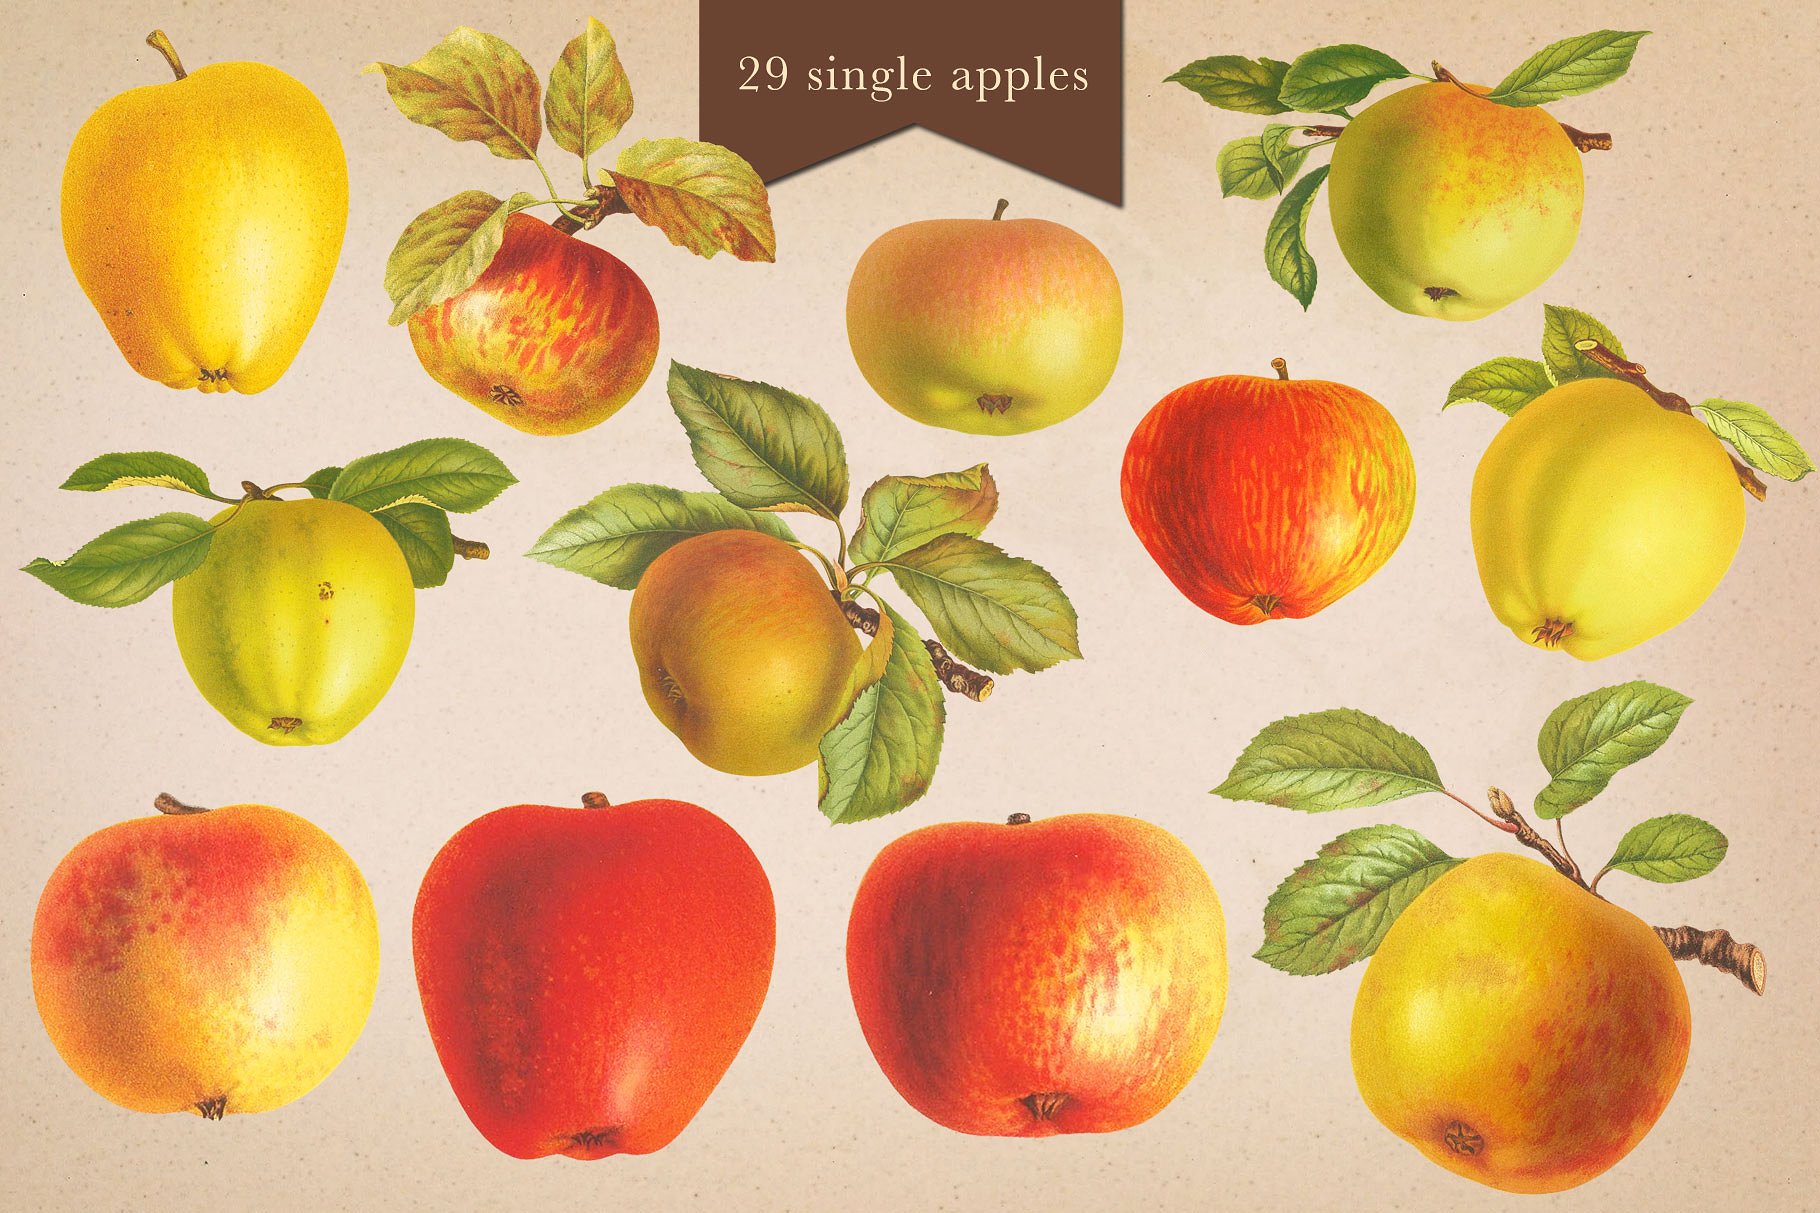 苹果酒屋苹果和梨图案Cider House Apple -a